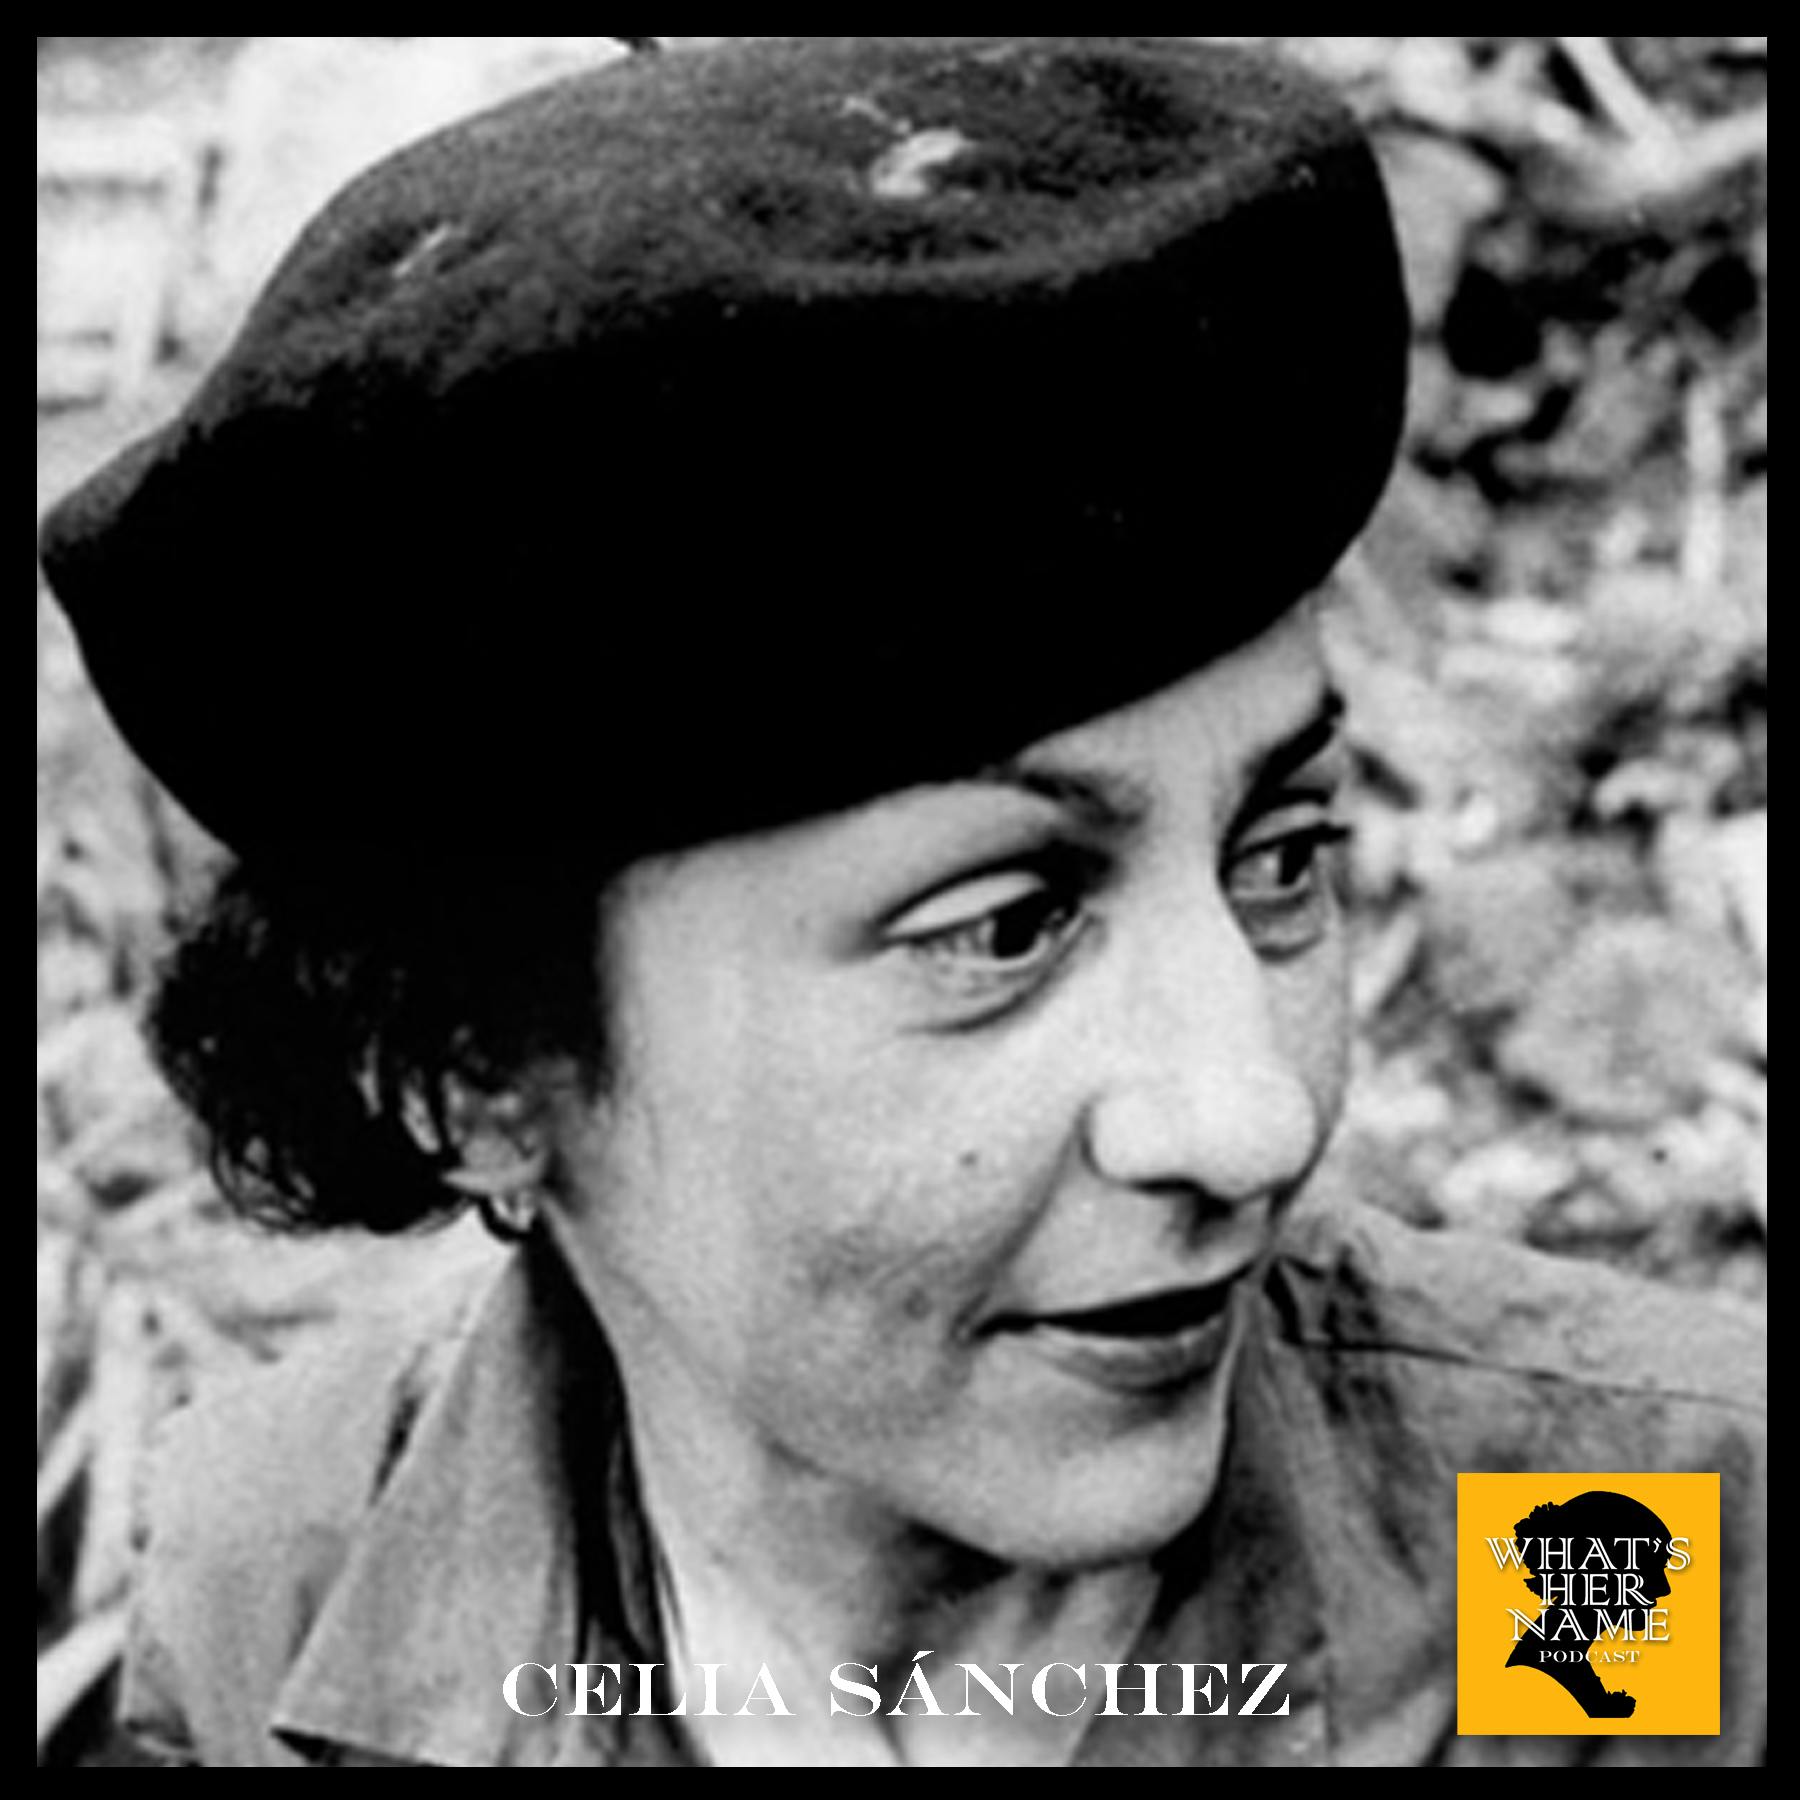 THE ORGANIZER Celia Sánchez